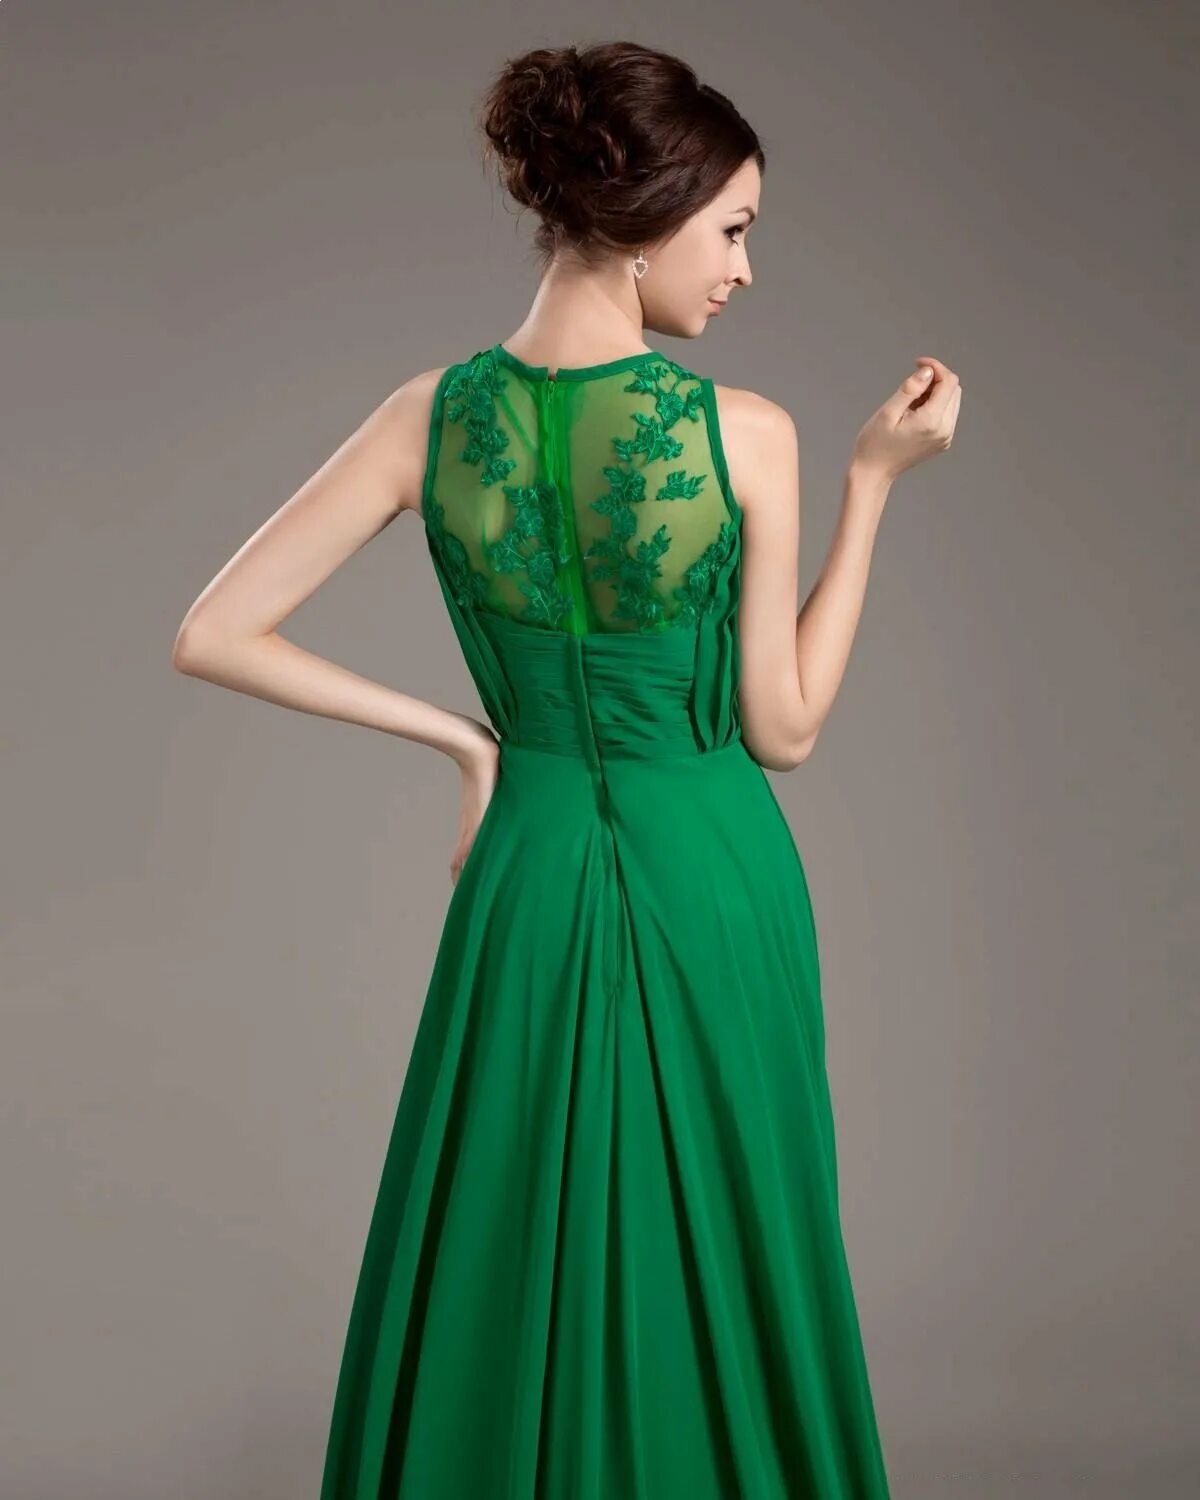 Сонник зеленое платье